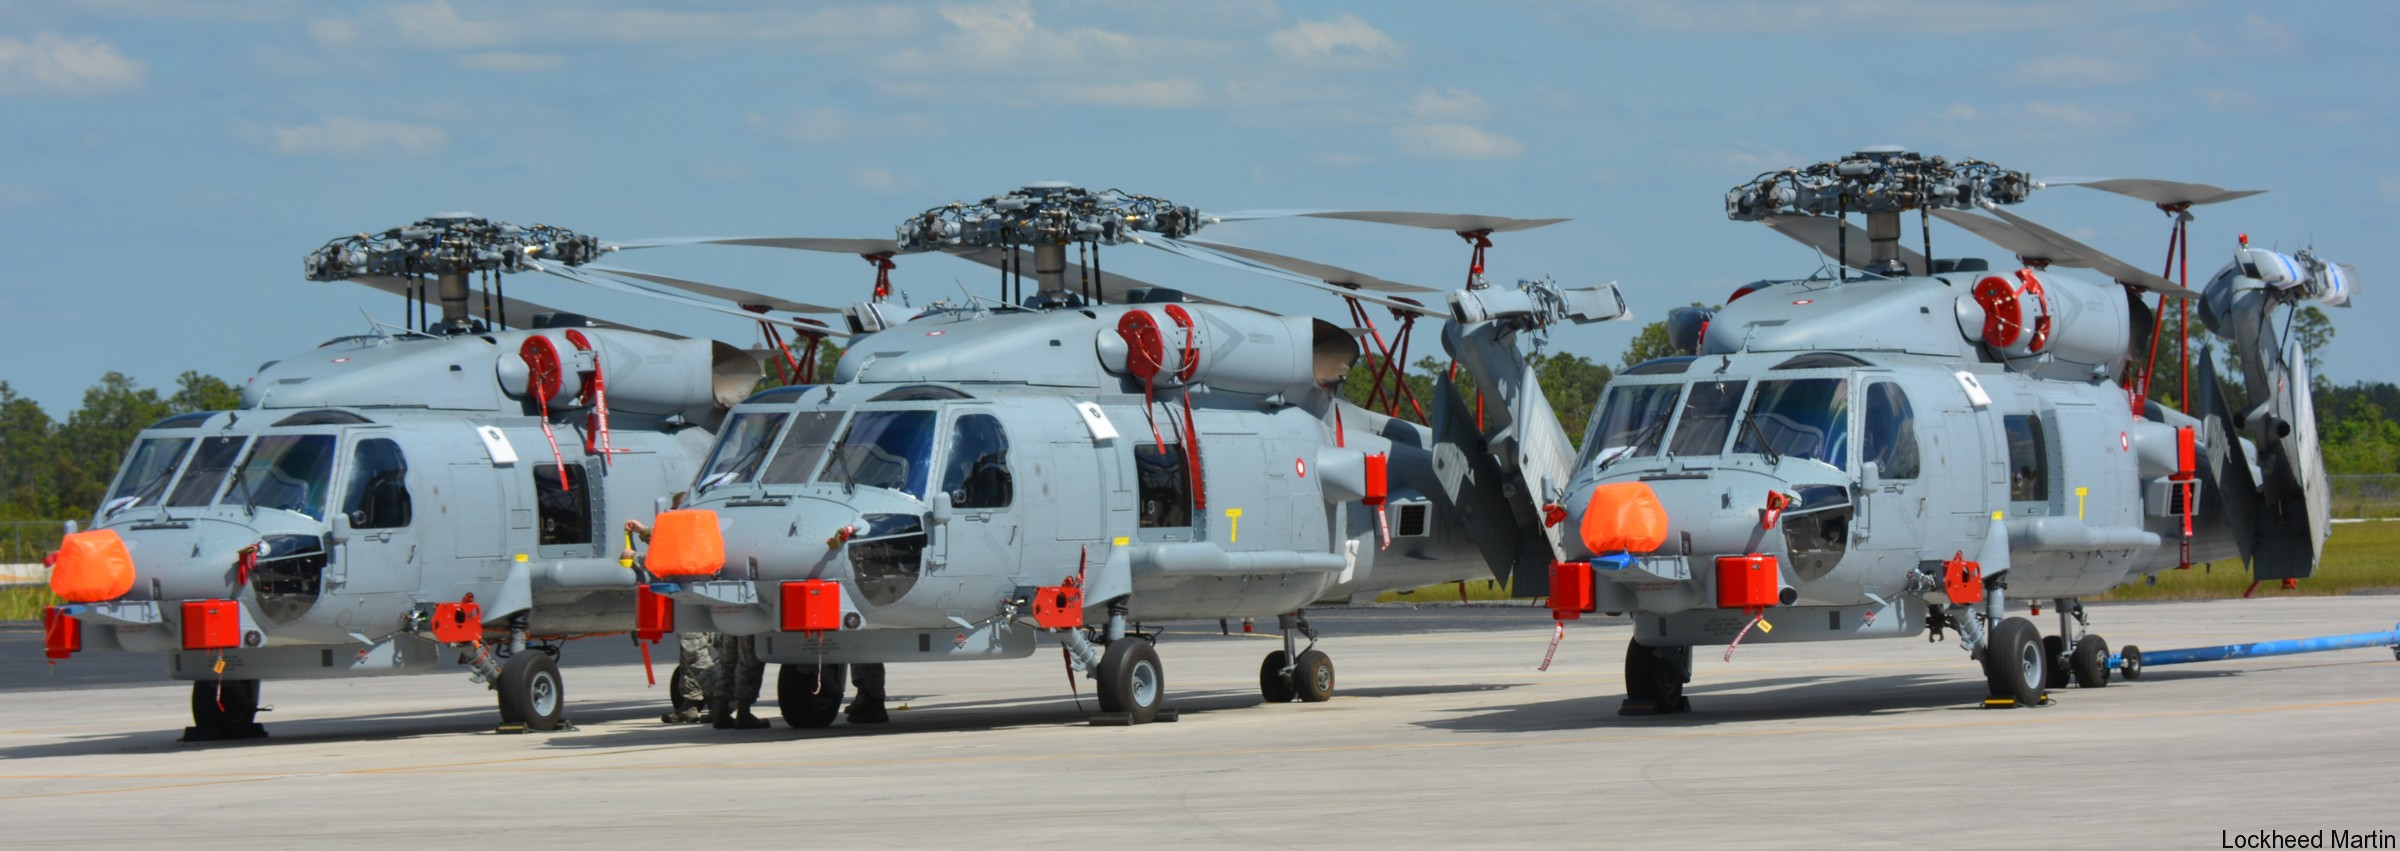 mh-60r seahawk royal danish navy air force flyvevåbnet kongelige danske marine sikorsky helicopter 723 eskadrille squadron karup 04